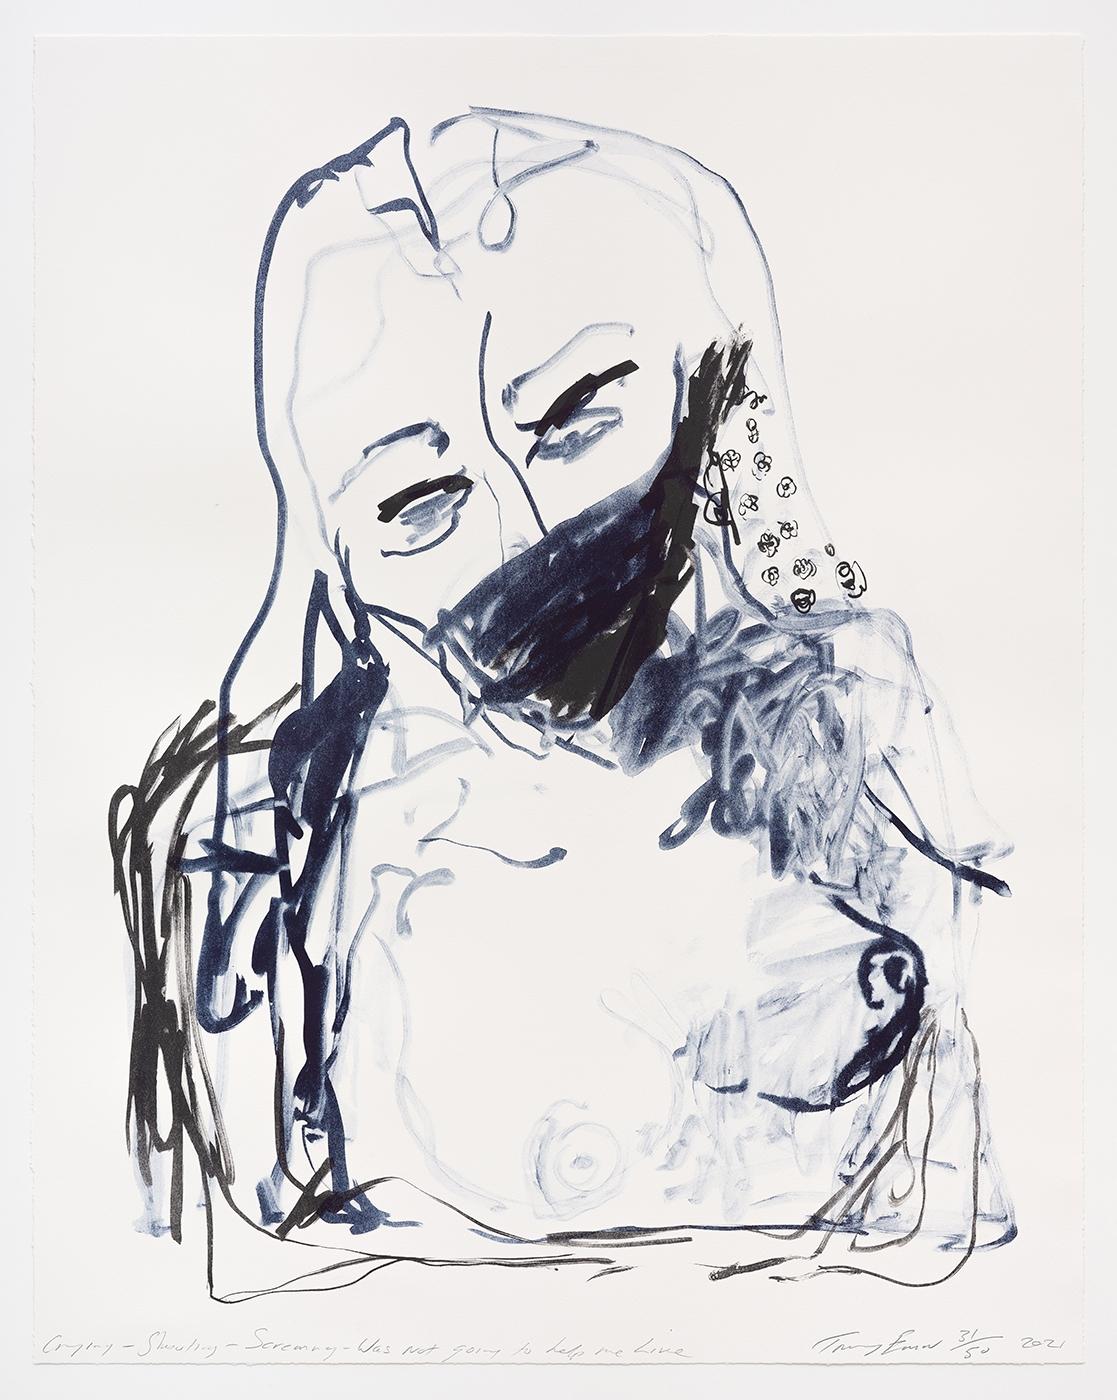 Tracey Emin
Un voyage vers la mort (Portfolio de 10)
2021
Lithographie 2 couleurs sur Somerset Velvet Warm White 400 g/m².
94 × 74 cm (37 × 29.1 in)
Chacune est signée, numérotée et datée par l'artiste.
Edition de 50
En parfait état.

VEUILLEZ NOTER